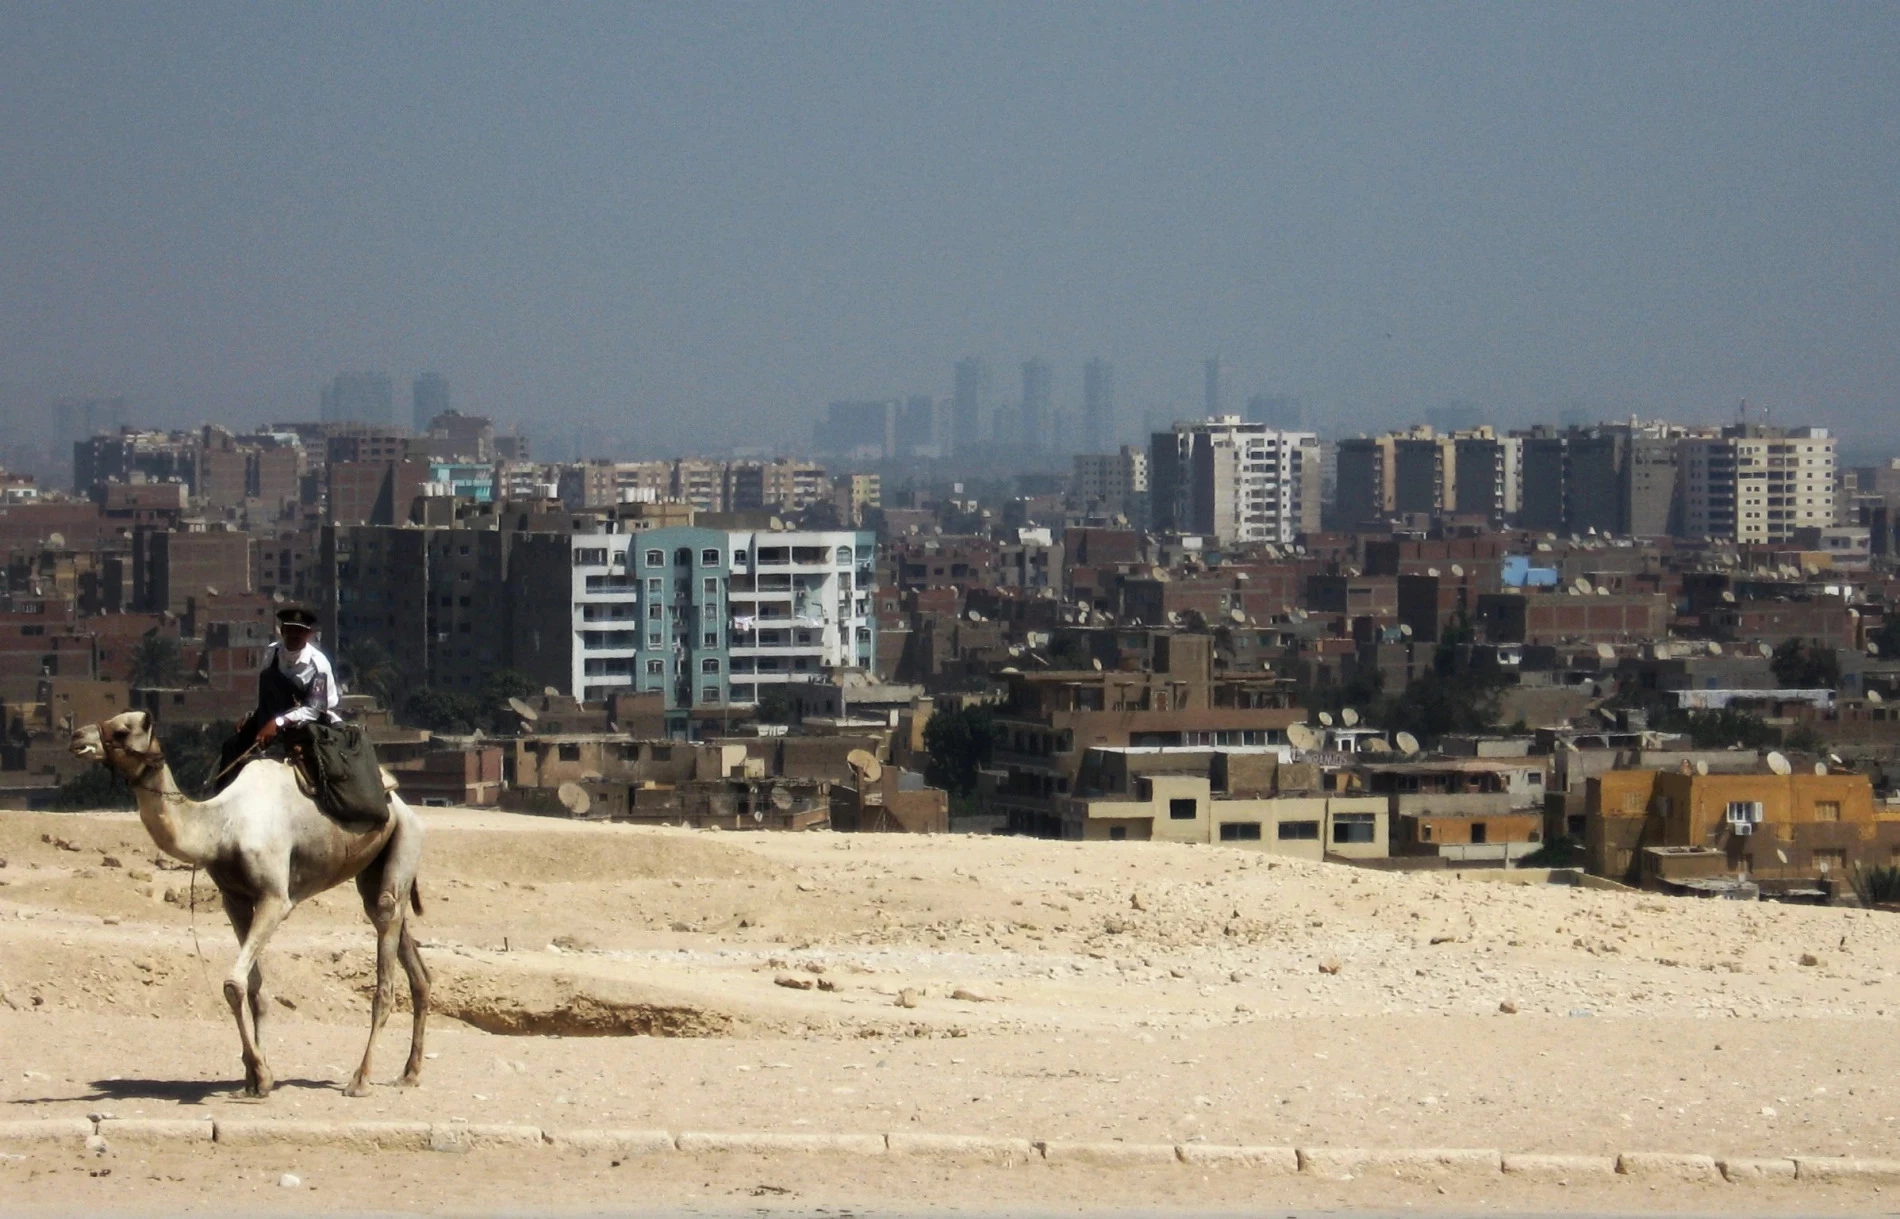 In Caïro is de woestijn altijd dichtbij...